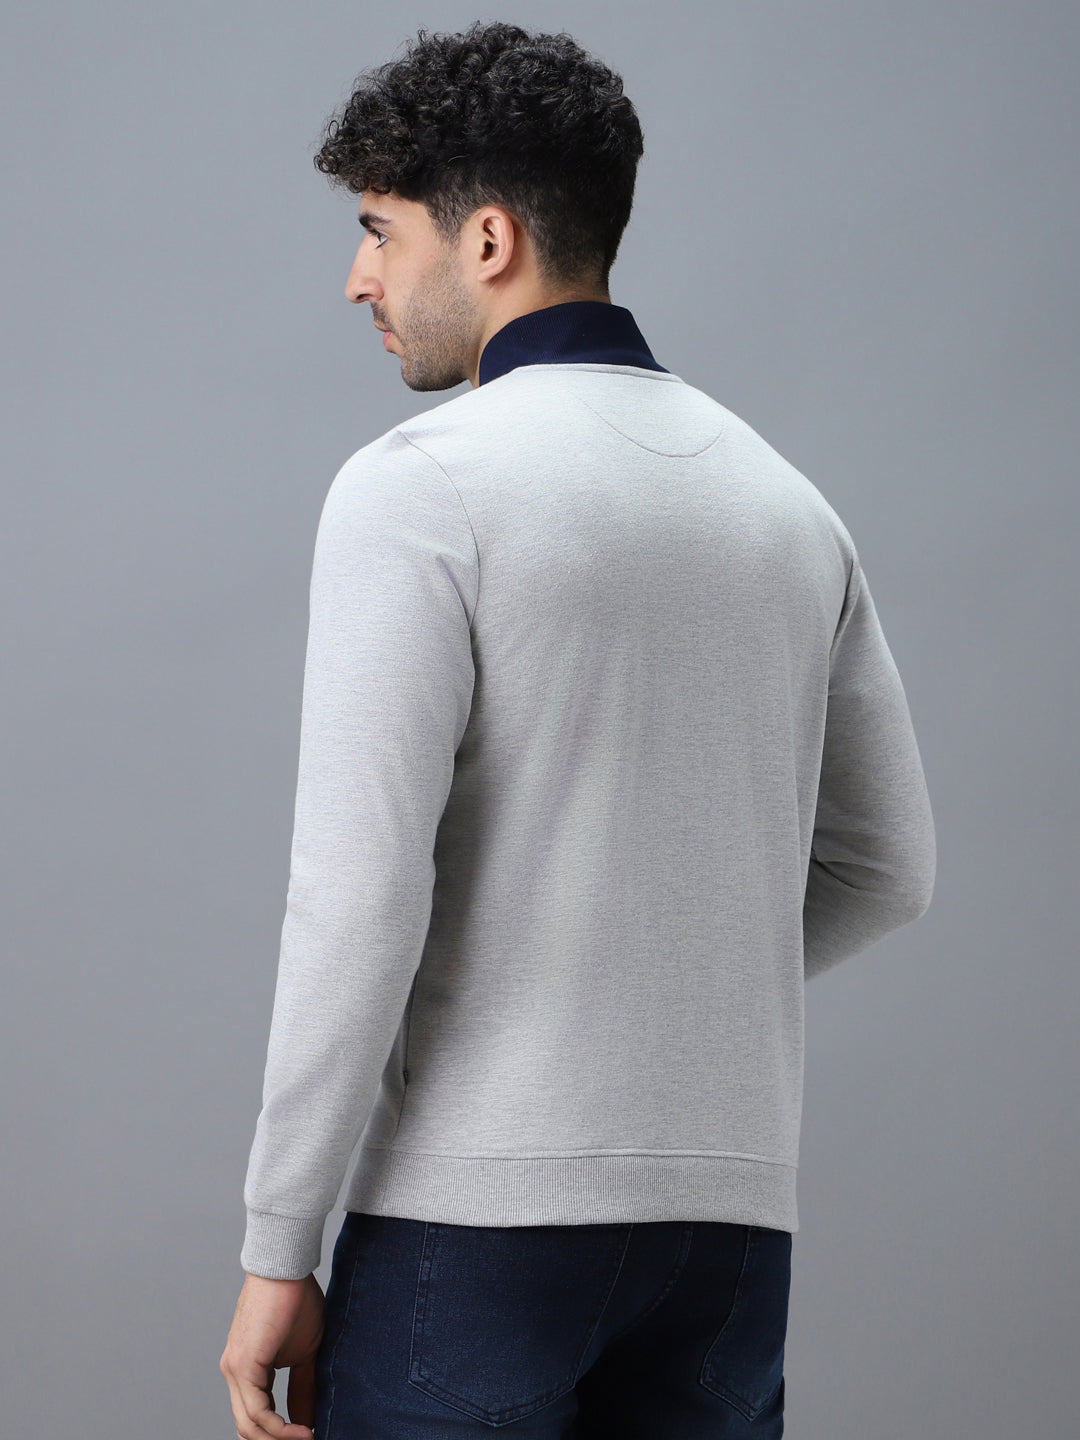 Men's Grey Cotton Solid Zippered High Neck Sweatshirt